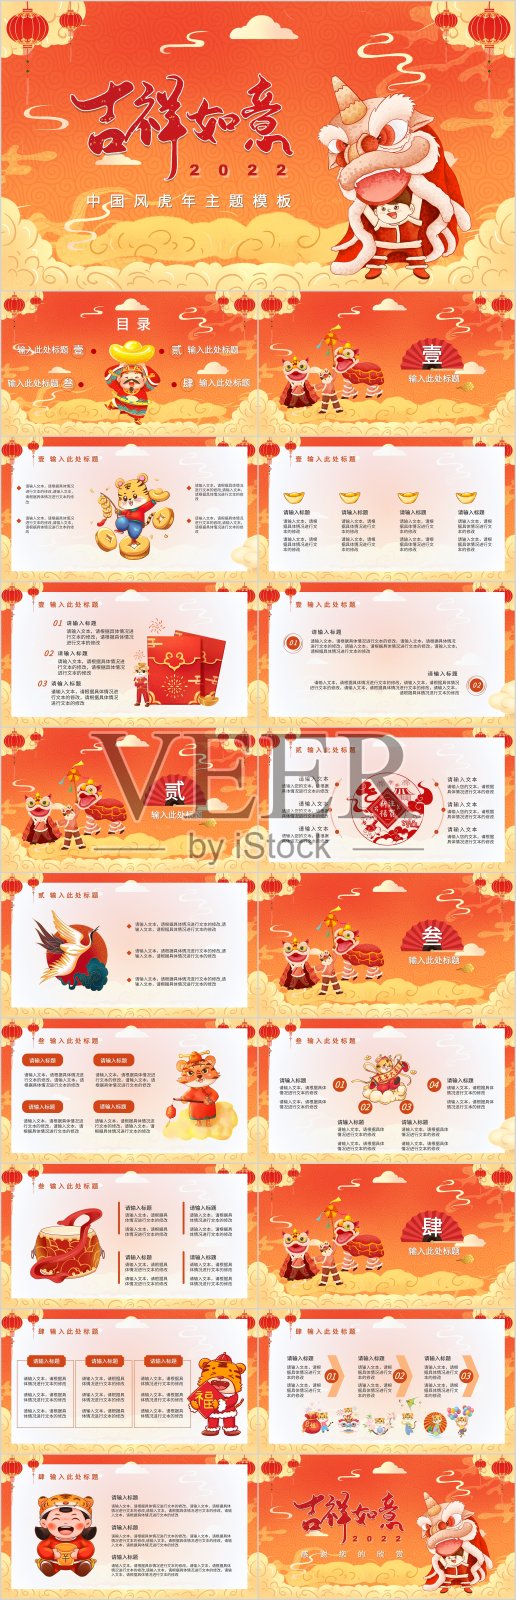 橘色中国风虎年春节PPT模板设计模板素材